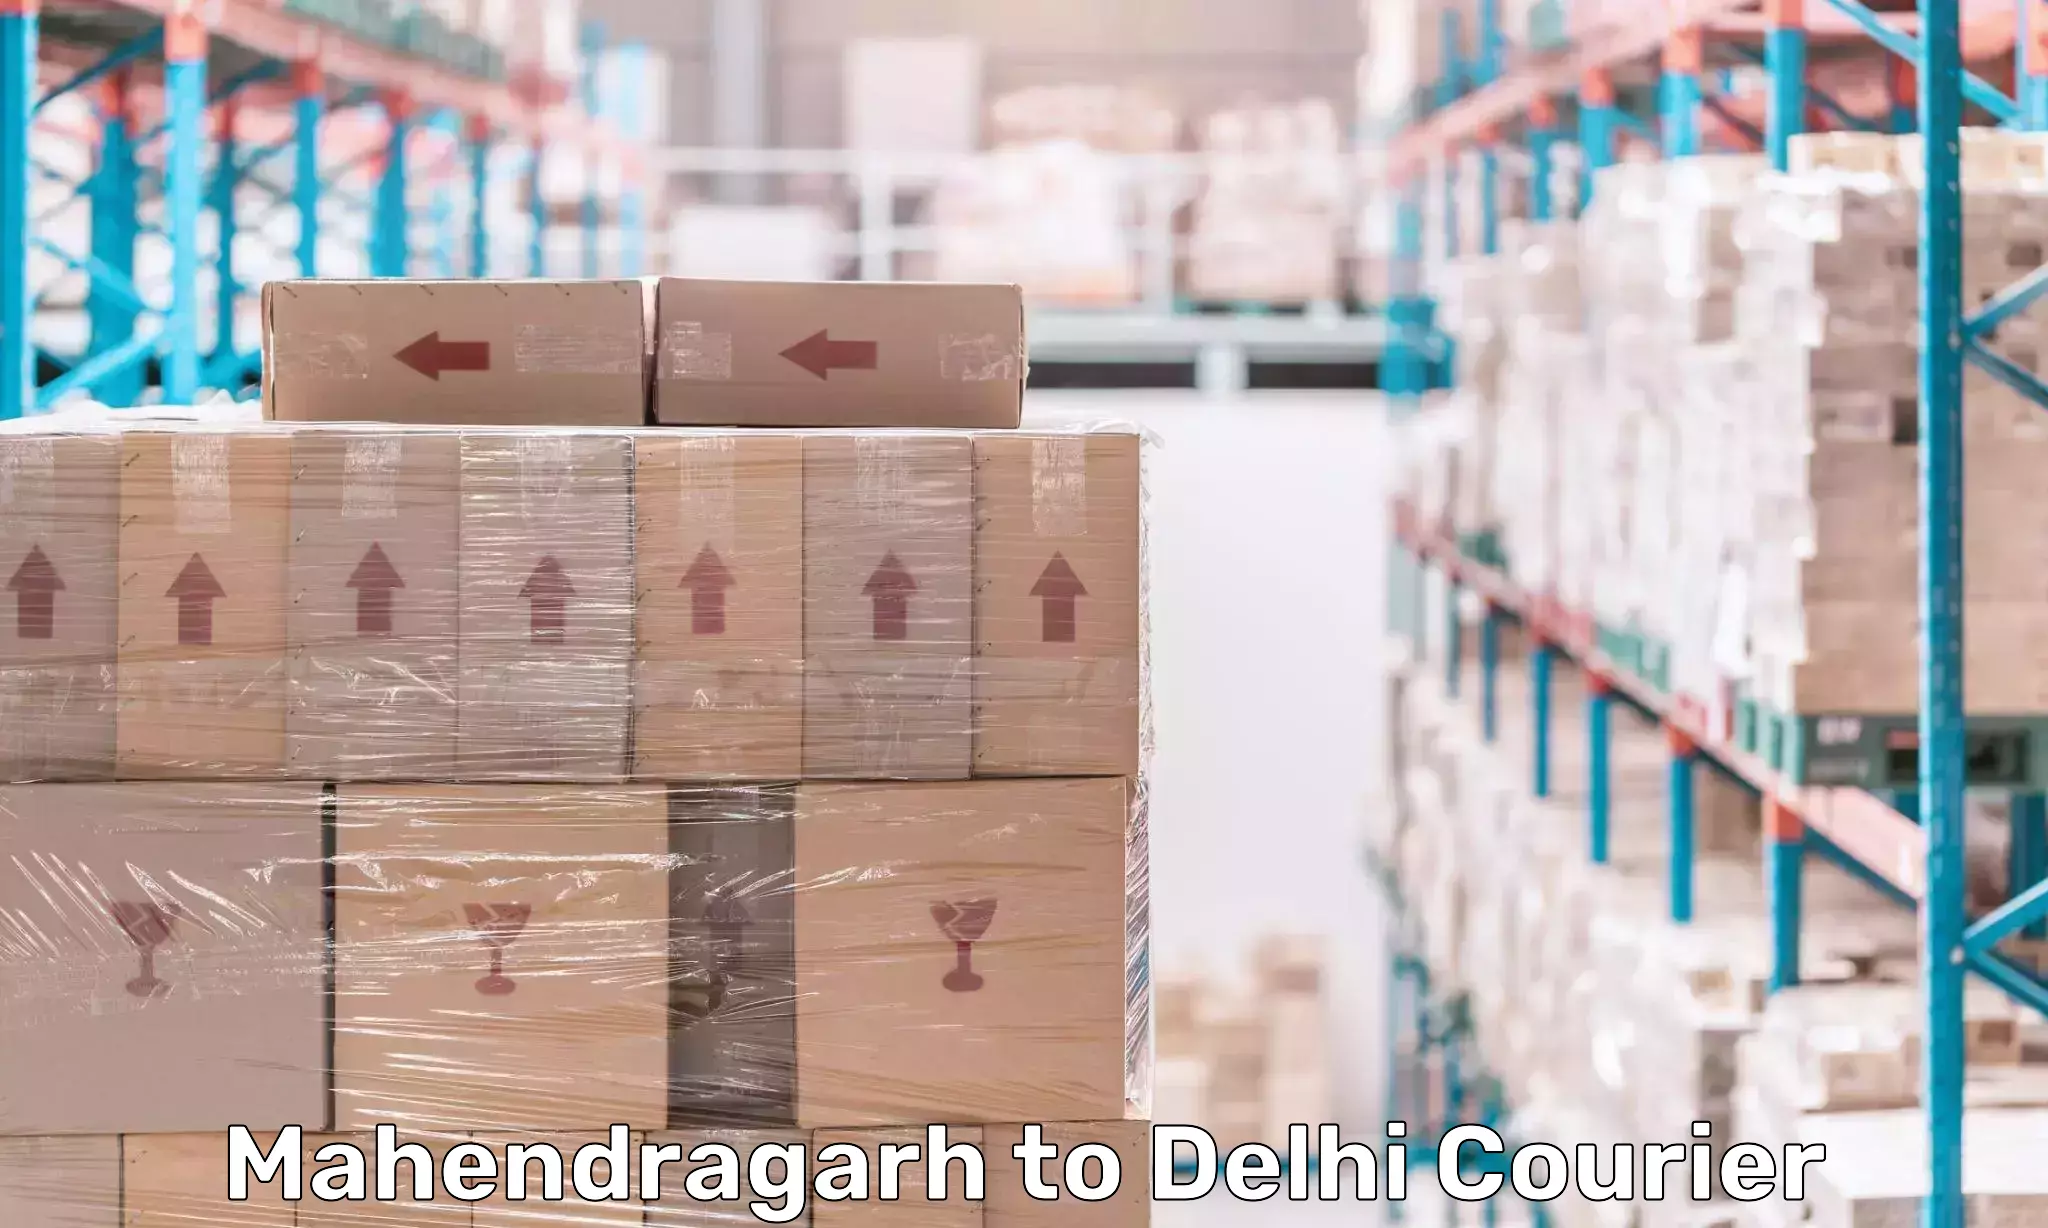 Multi-service courier options Mahendragarh to Delhi